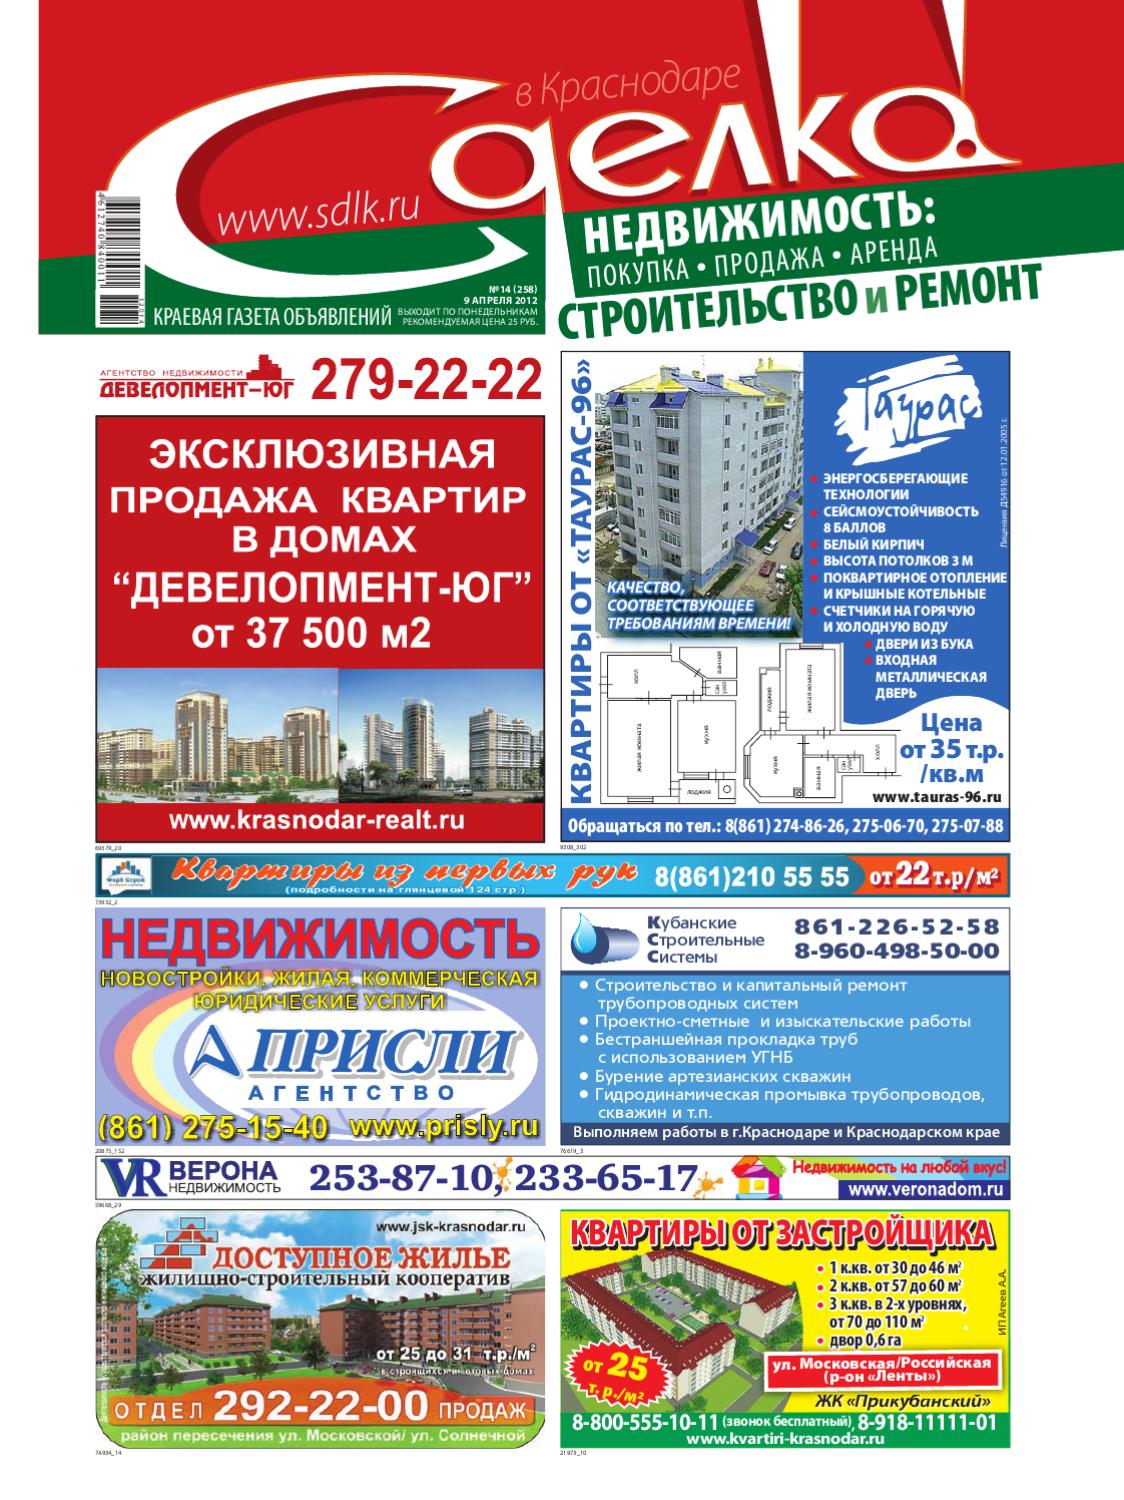 Сделка в Краснодаре № 258, апрель 2012